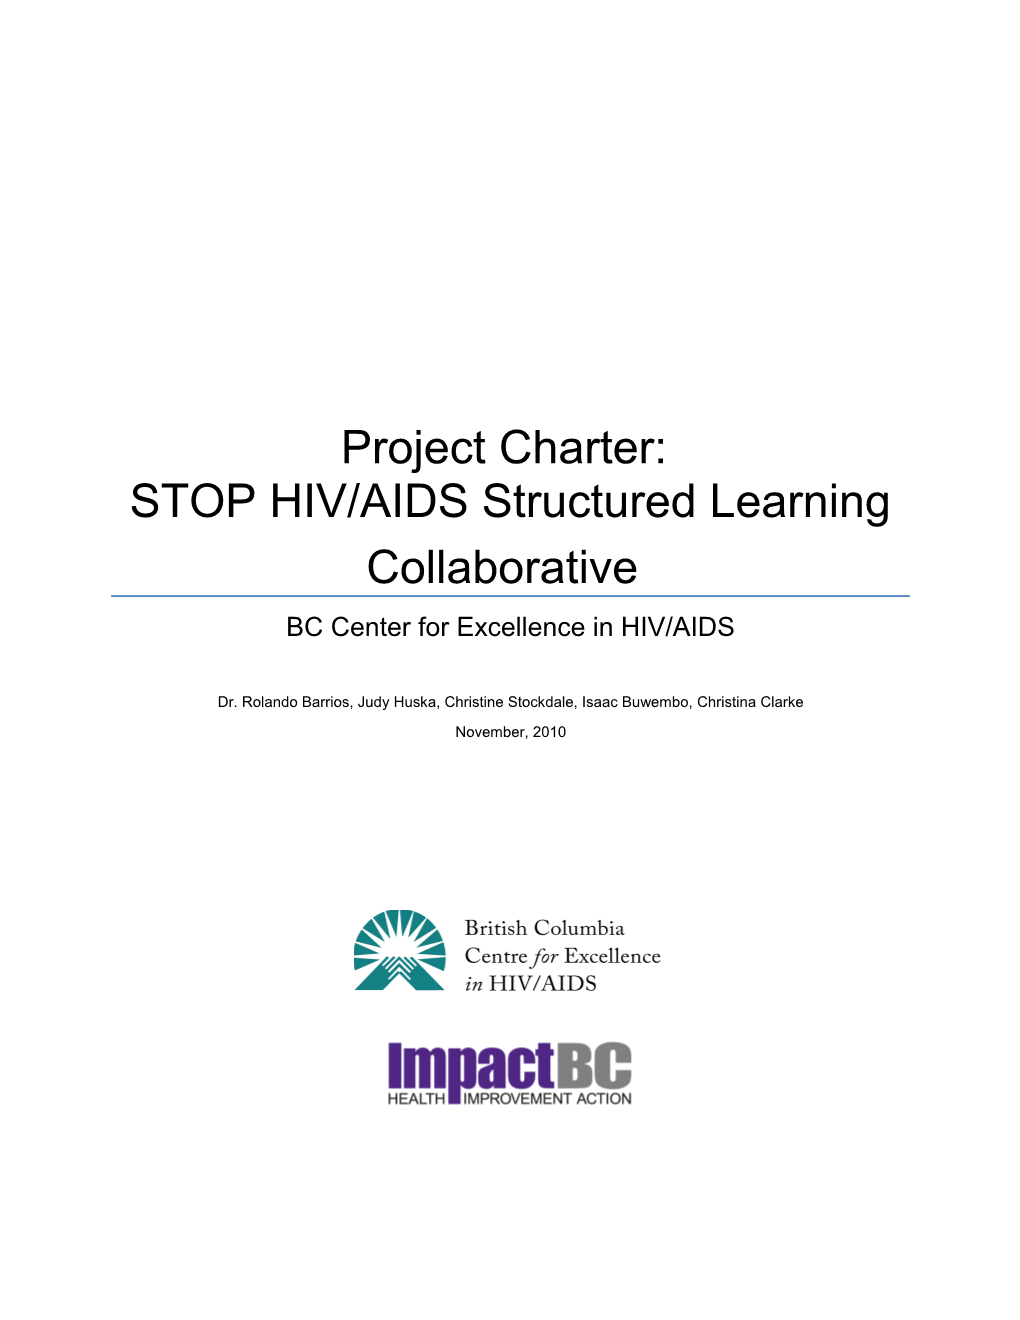 STOP HIV/AIDS Leadership Committee 2